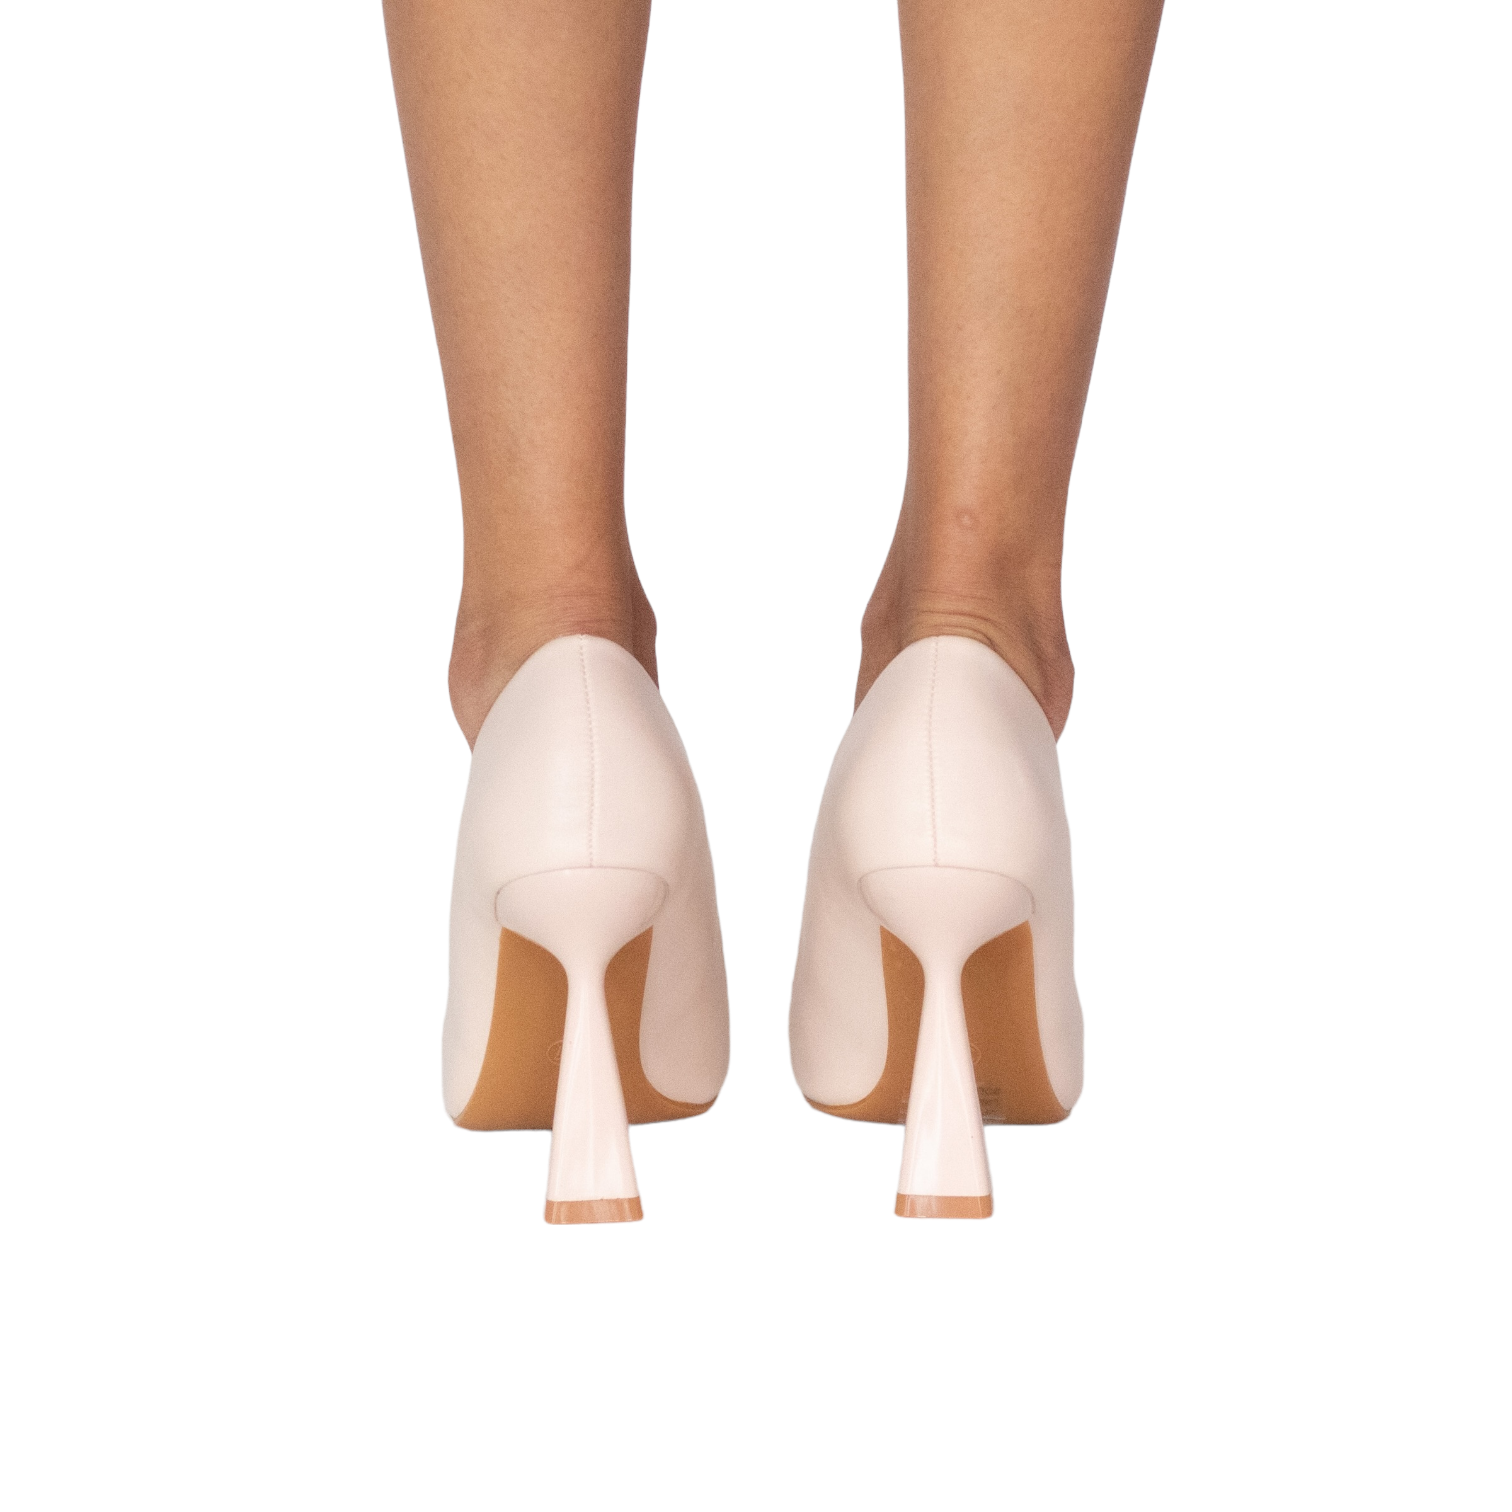 June 10cm sleek stiletto heel court shoes nude